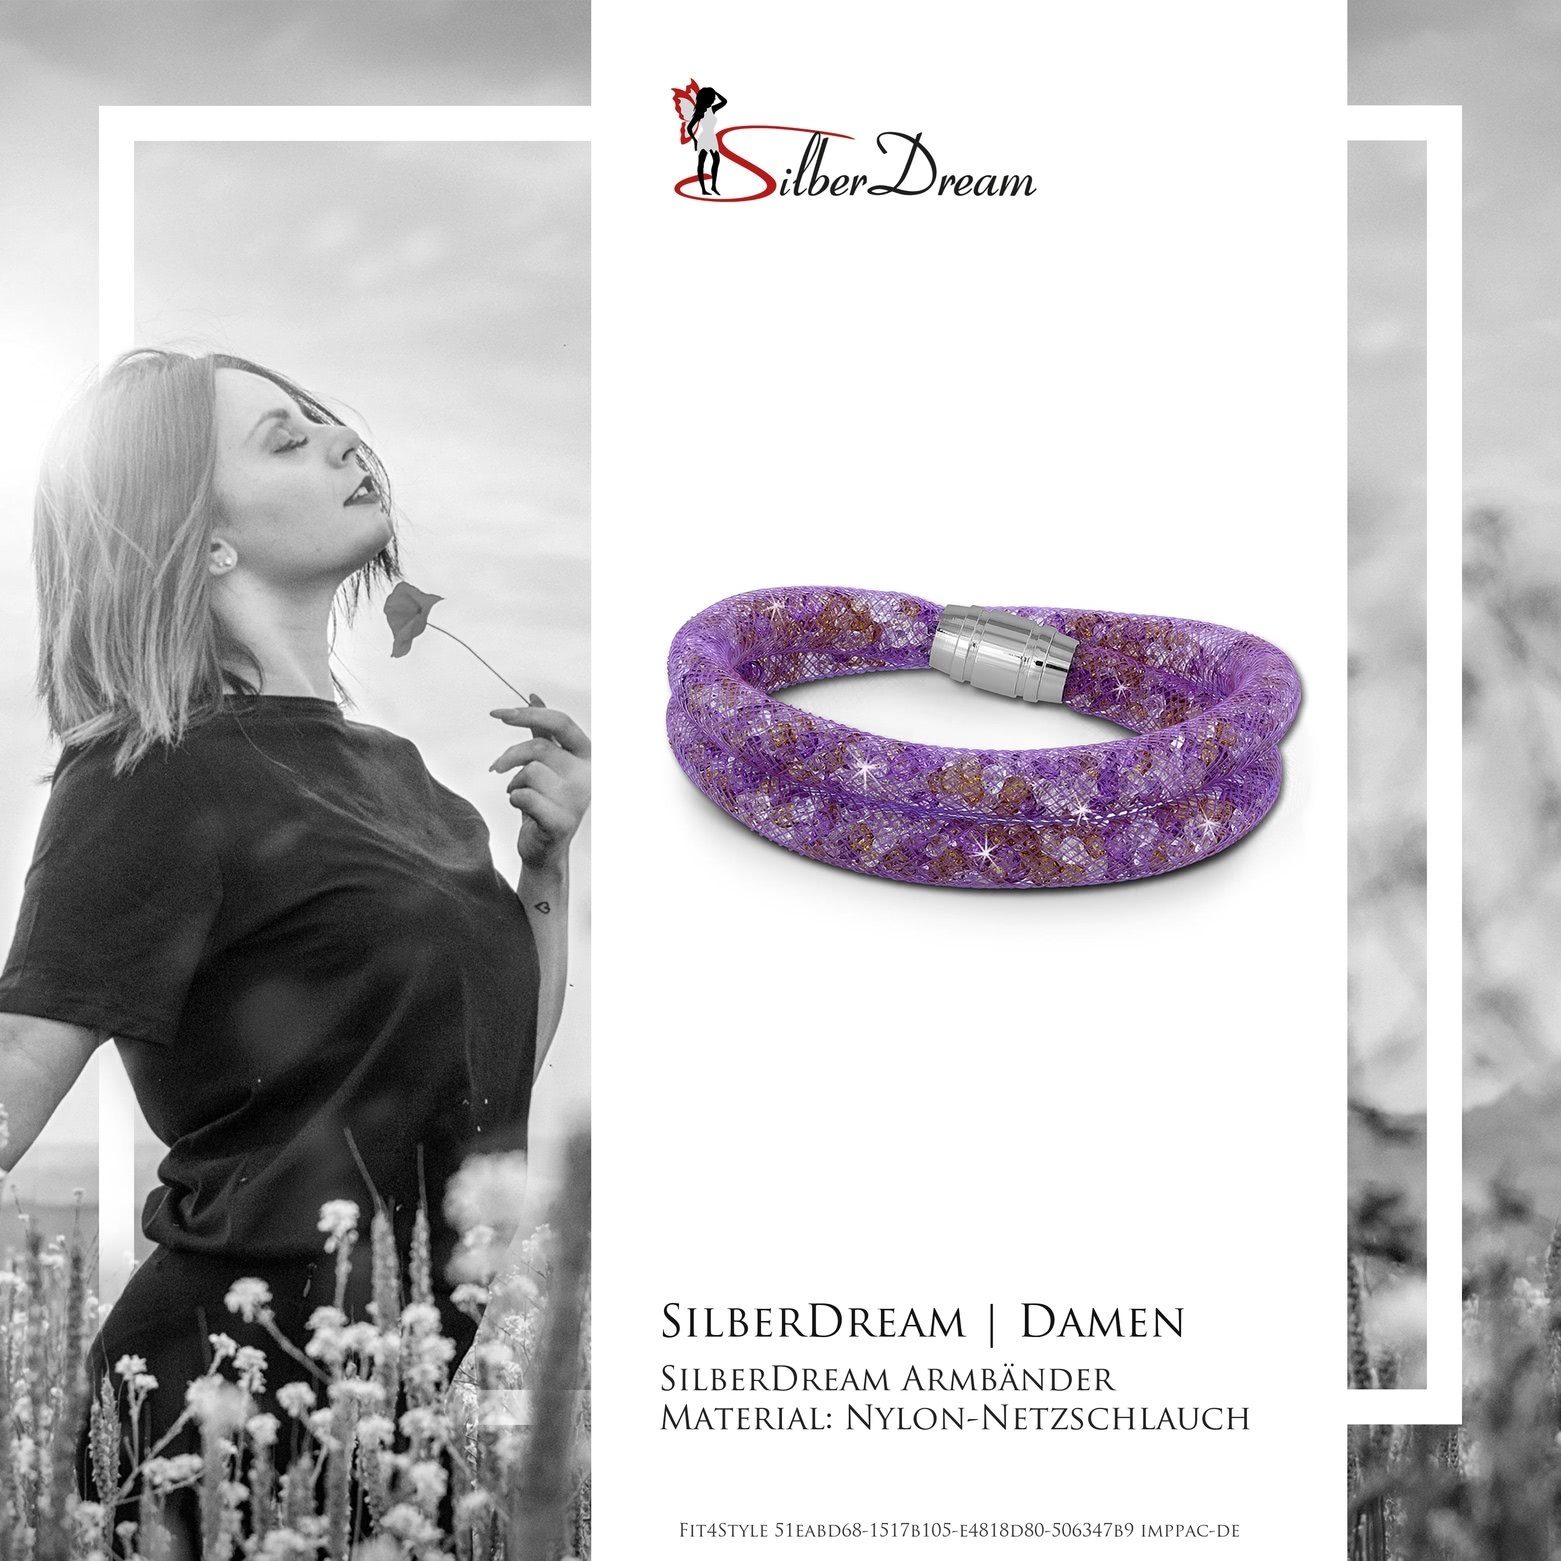 Damenarmband mehrfarbig SilberDream (Armband), mit Farbe: Edelstahlarmband Armband SilberDream Edelstahl-Verschluss, Arm-Schmuck bunt lila,